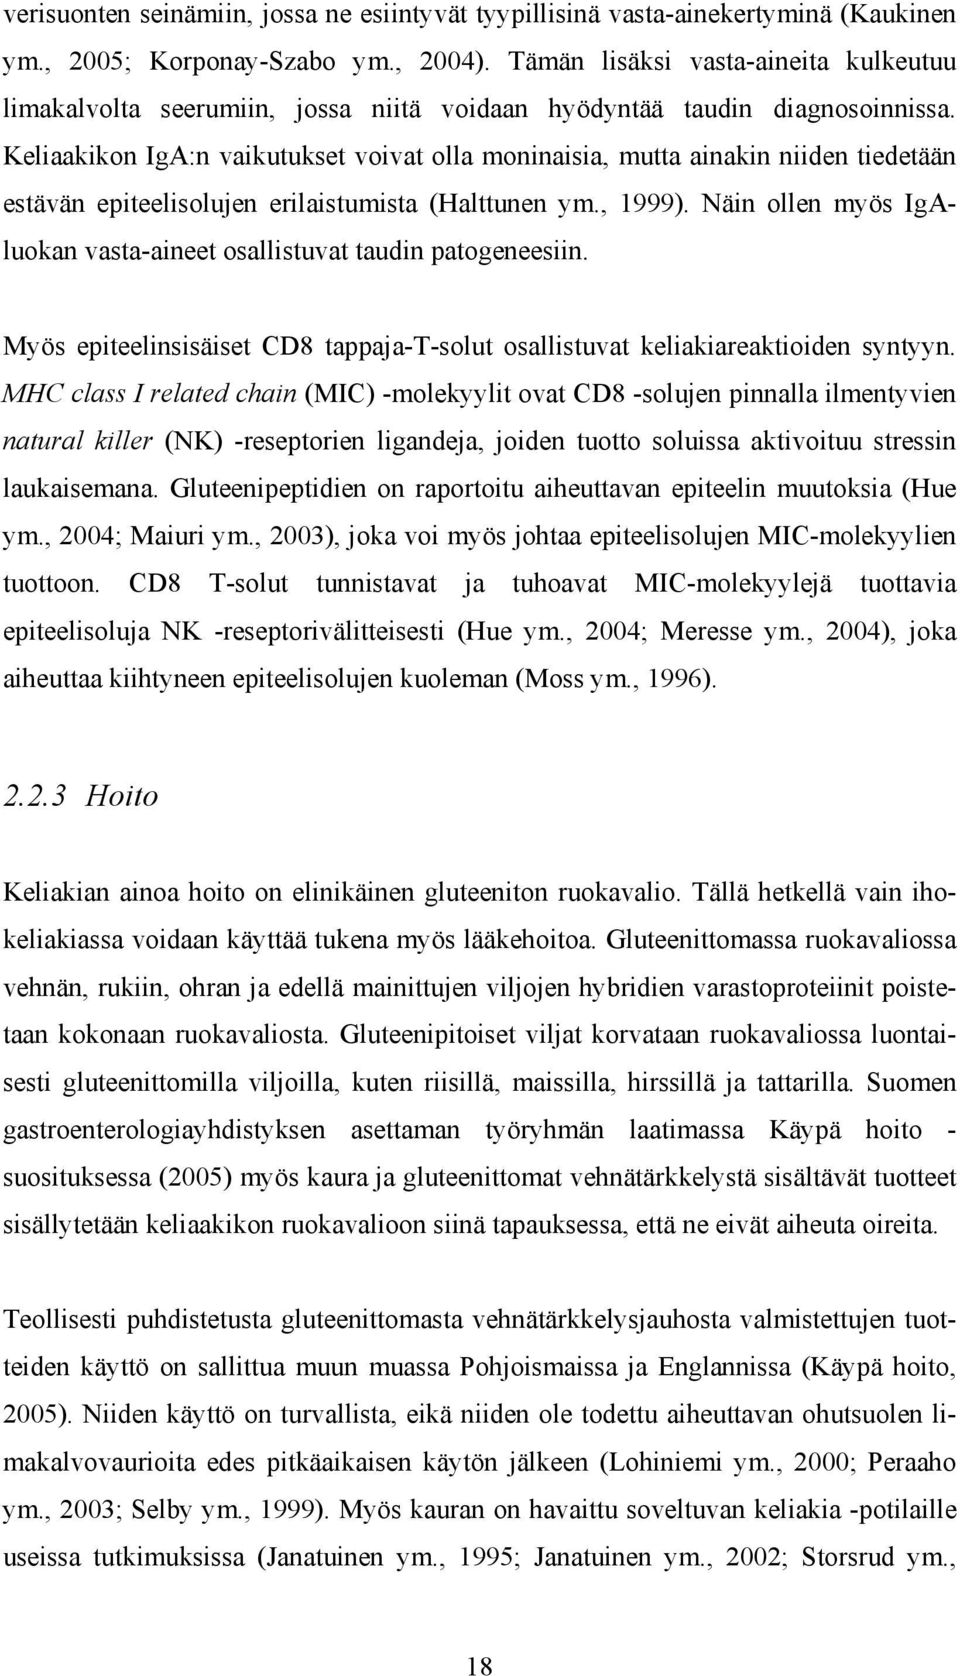 Keliaakikon IgA:n vaikutukset voivat olla moninaisia, mutta ainakin niiden tiedetään estävän epiteelisolujen erilaistumista (Halttunen ym., 1999).